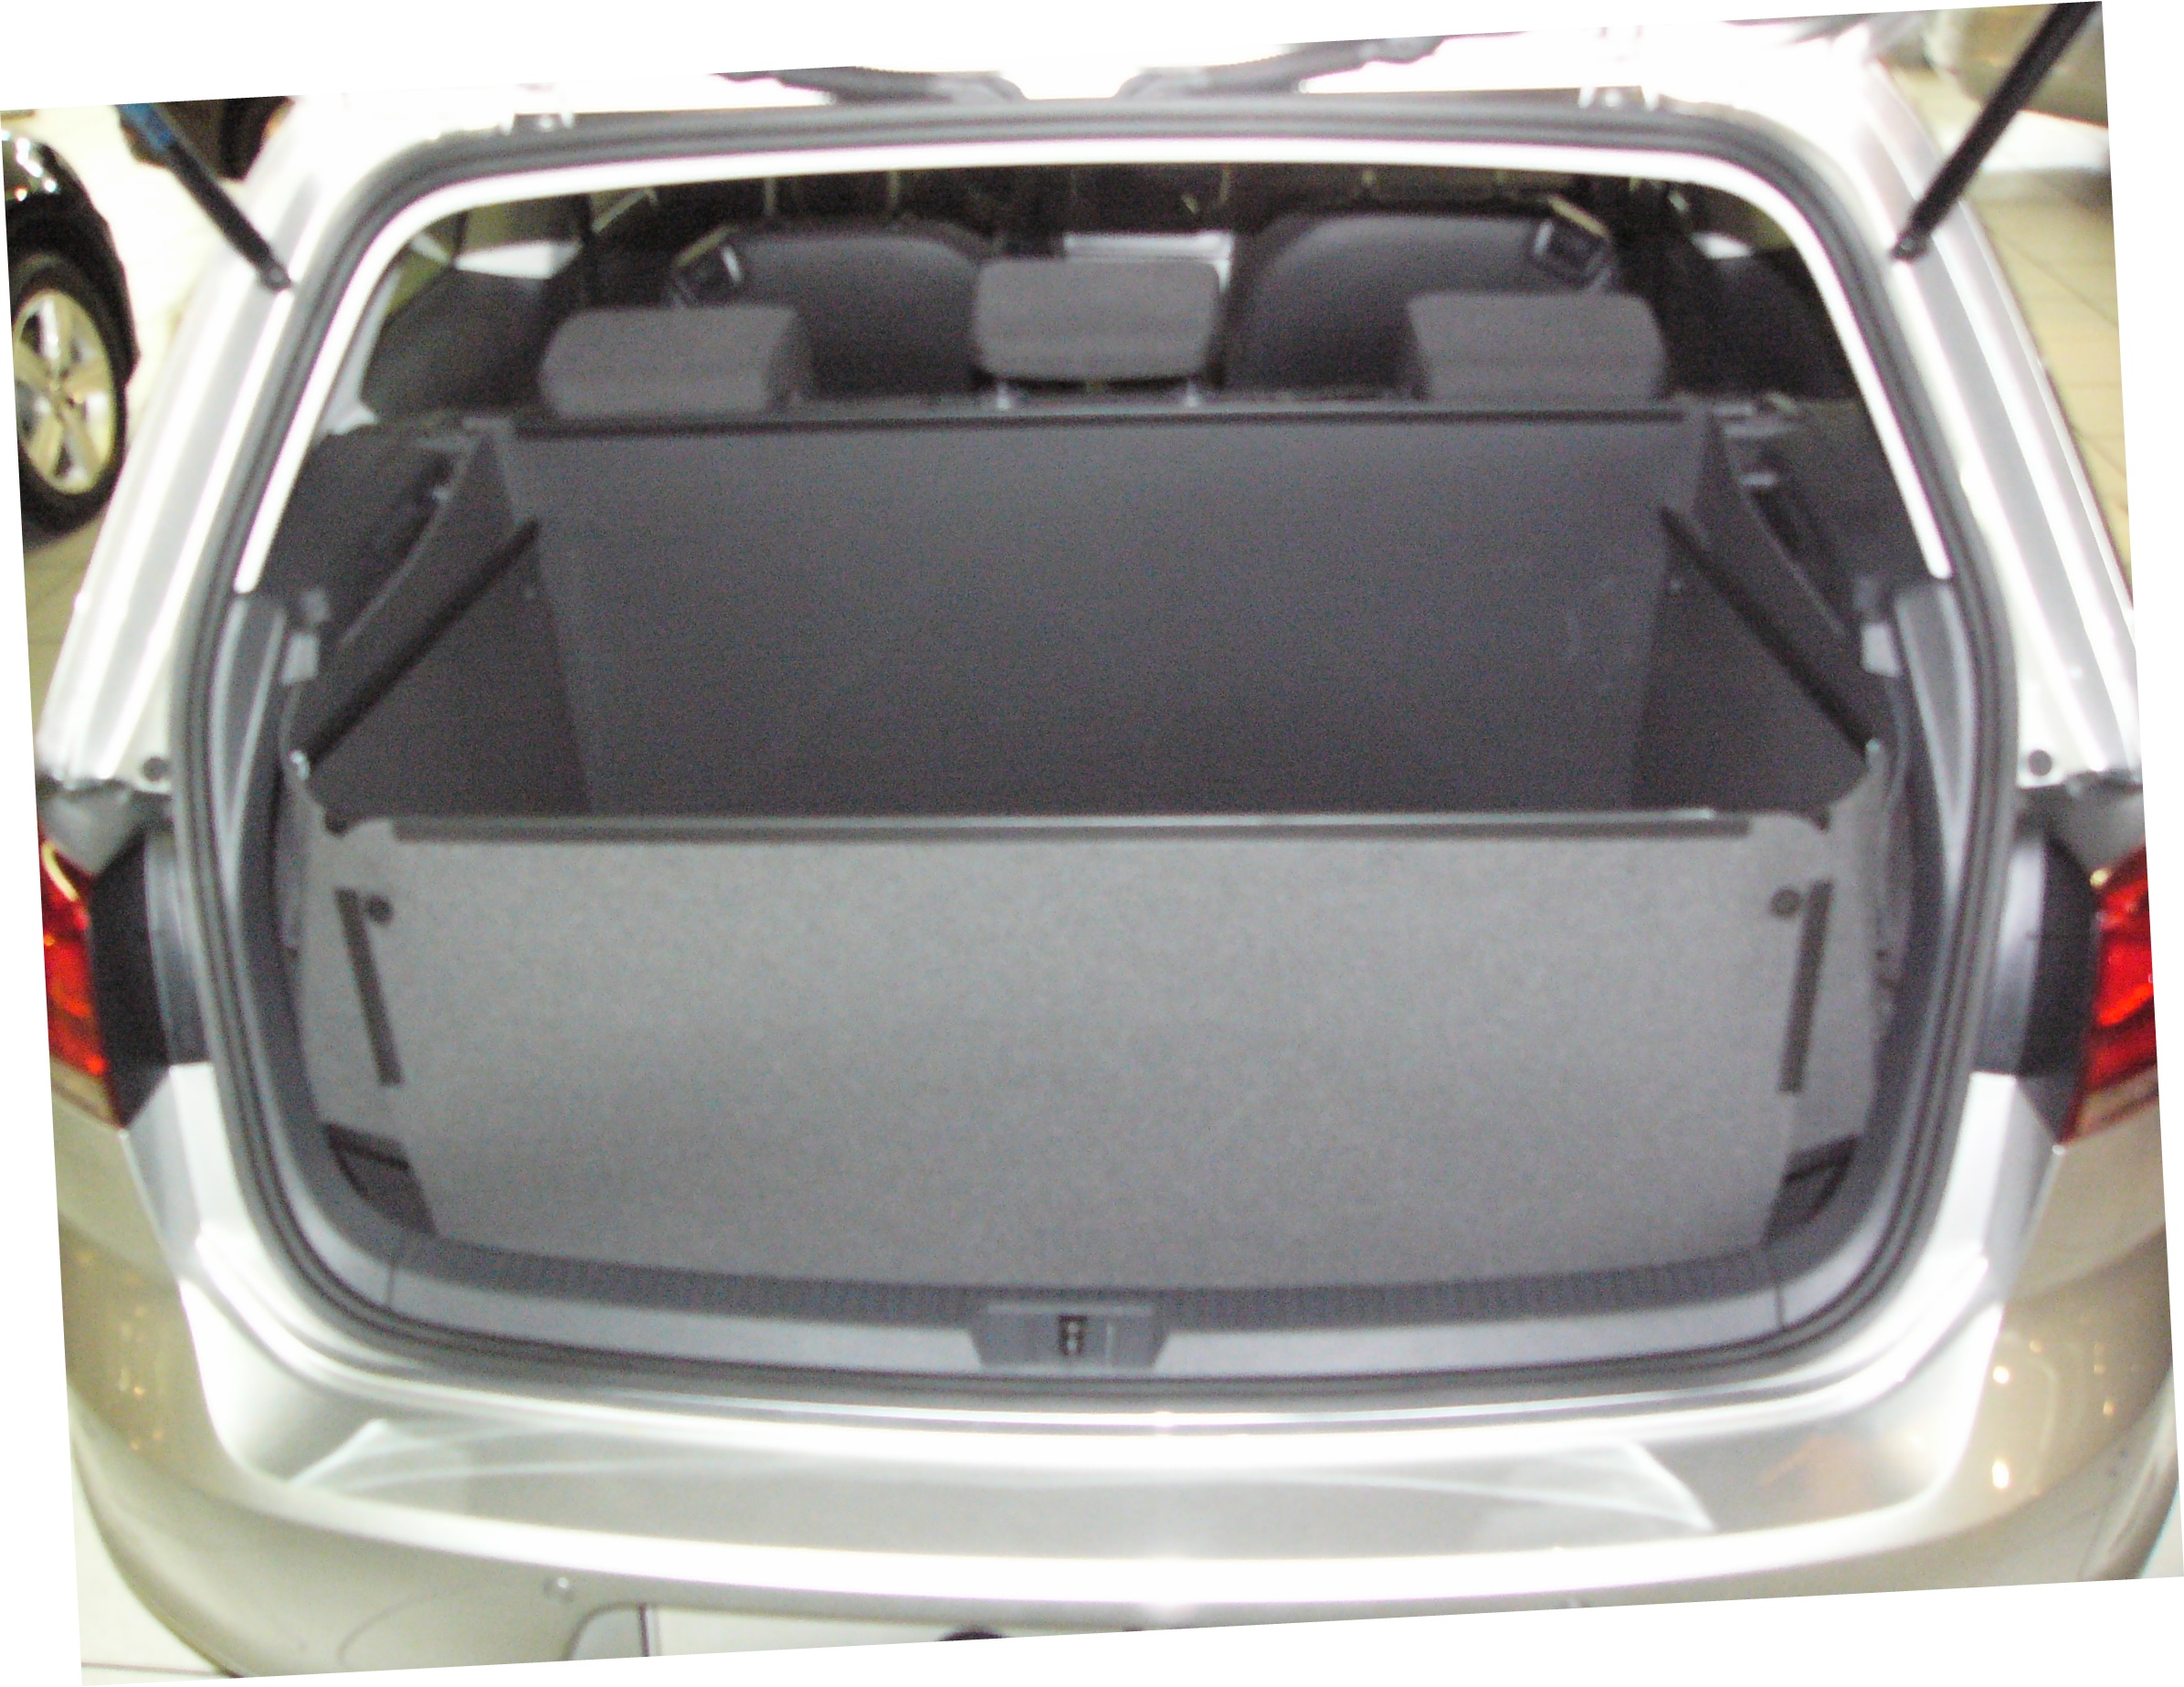 Kofferraumwanne für VW Golf 7 als ein unübertrefflicher Kofferraumschutz.